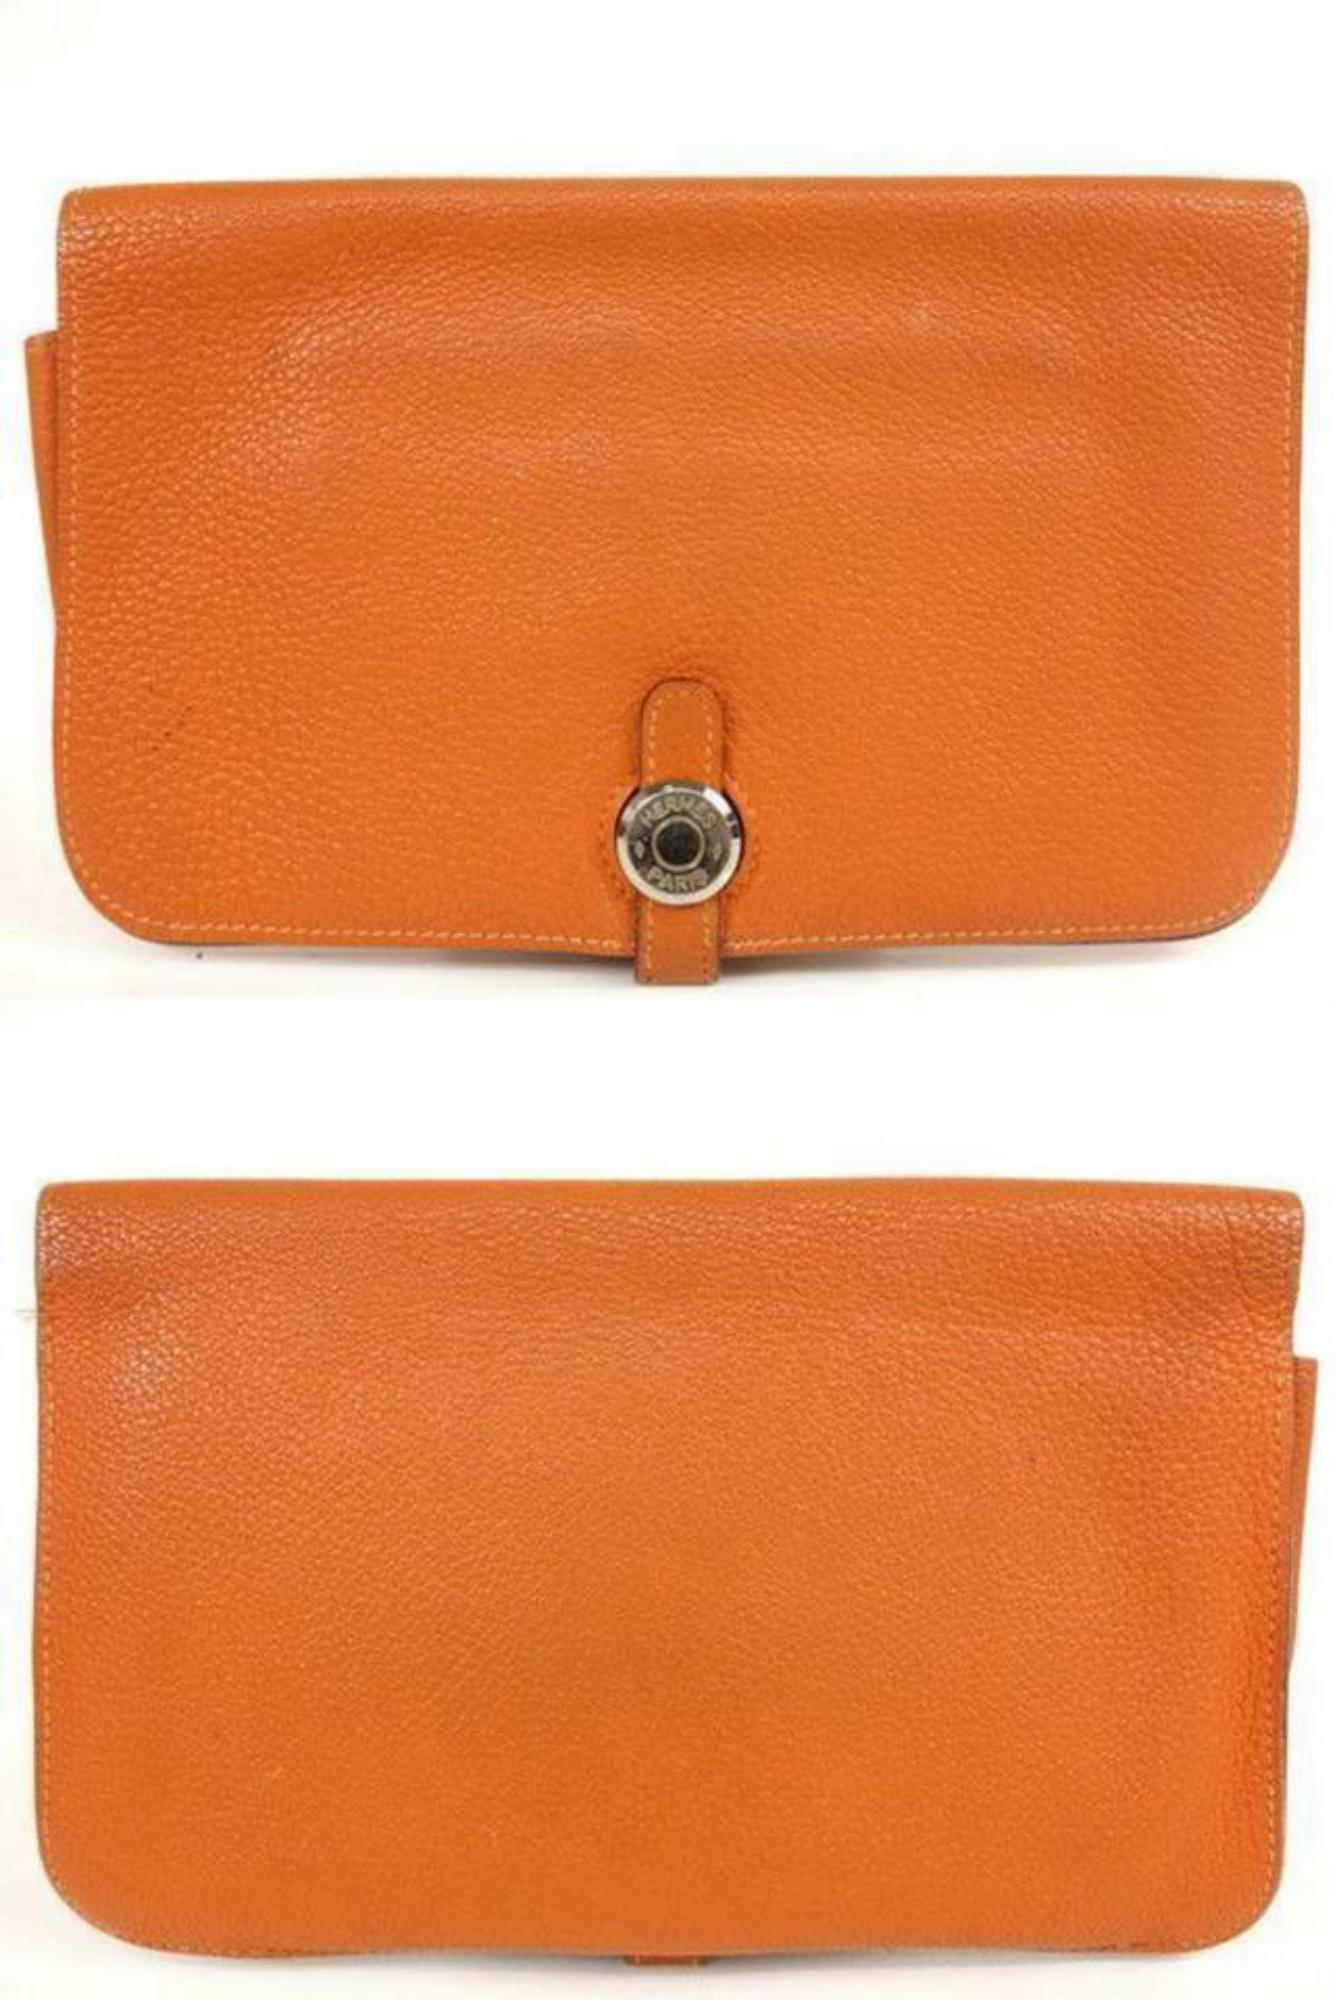 Hermès Orange Togo Leather Dogon Wallet 232H857 For Sale 4